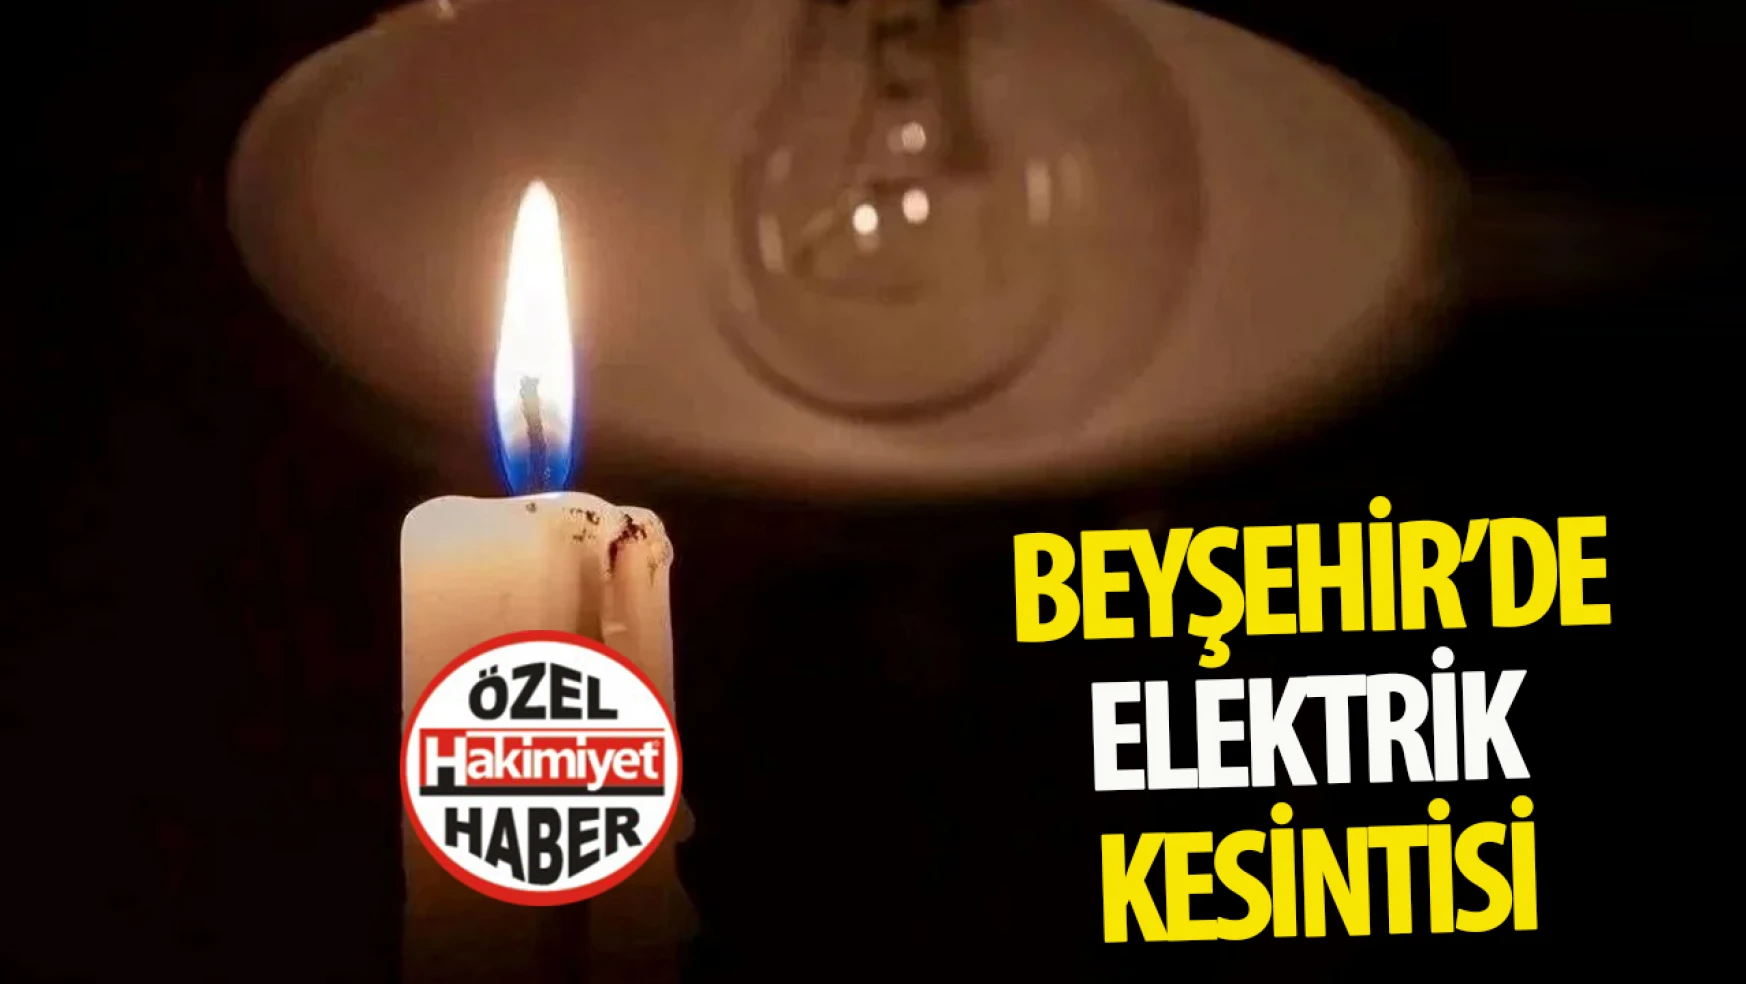 Beyşehir'de Elektrik Kesintisi Uyarısı!